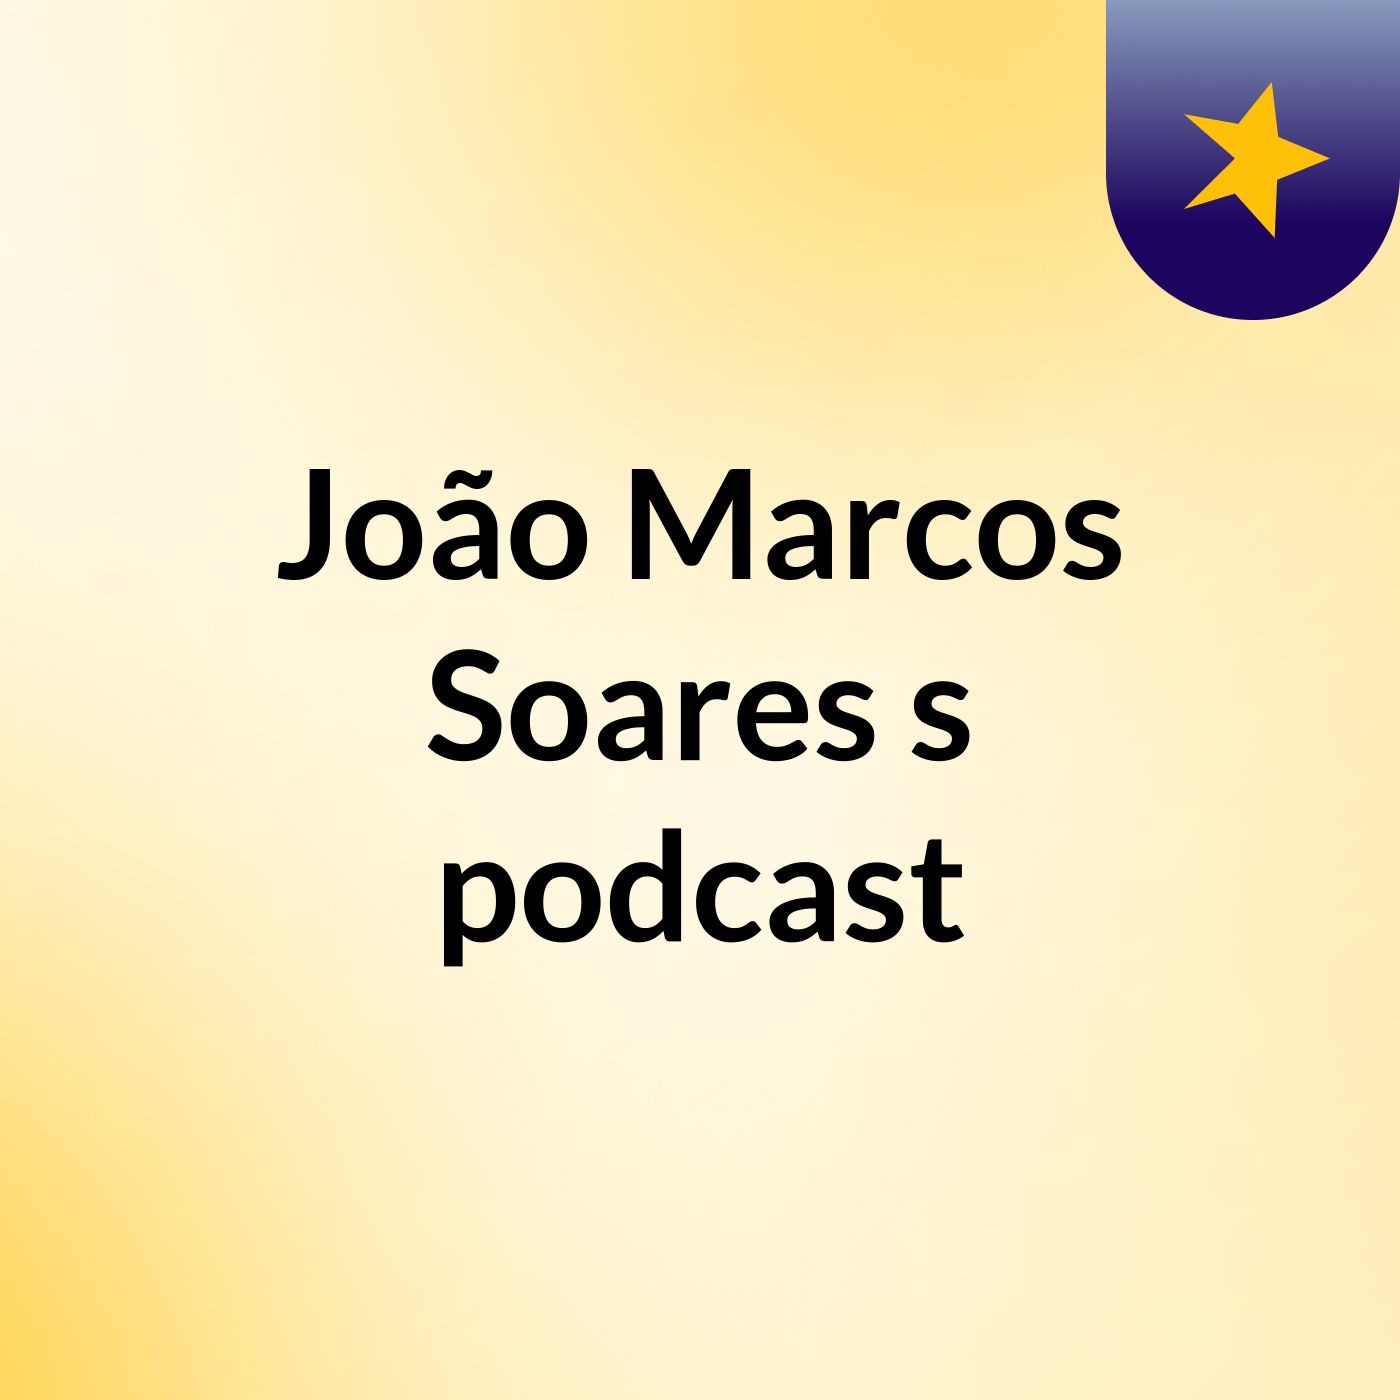 João Marcos Soares's podcast